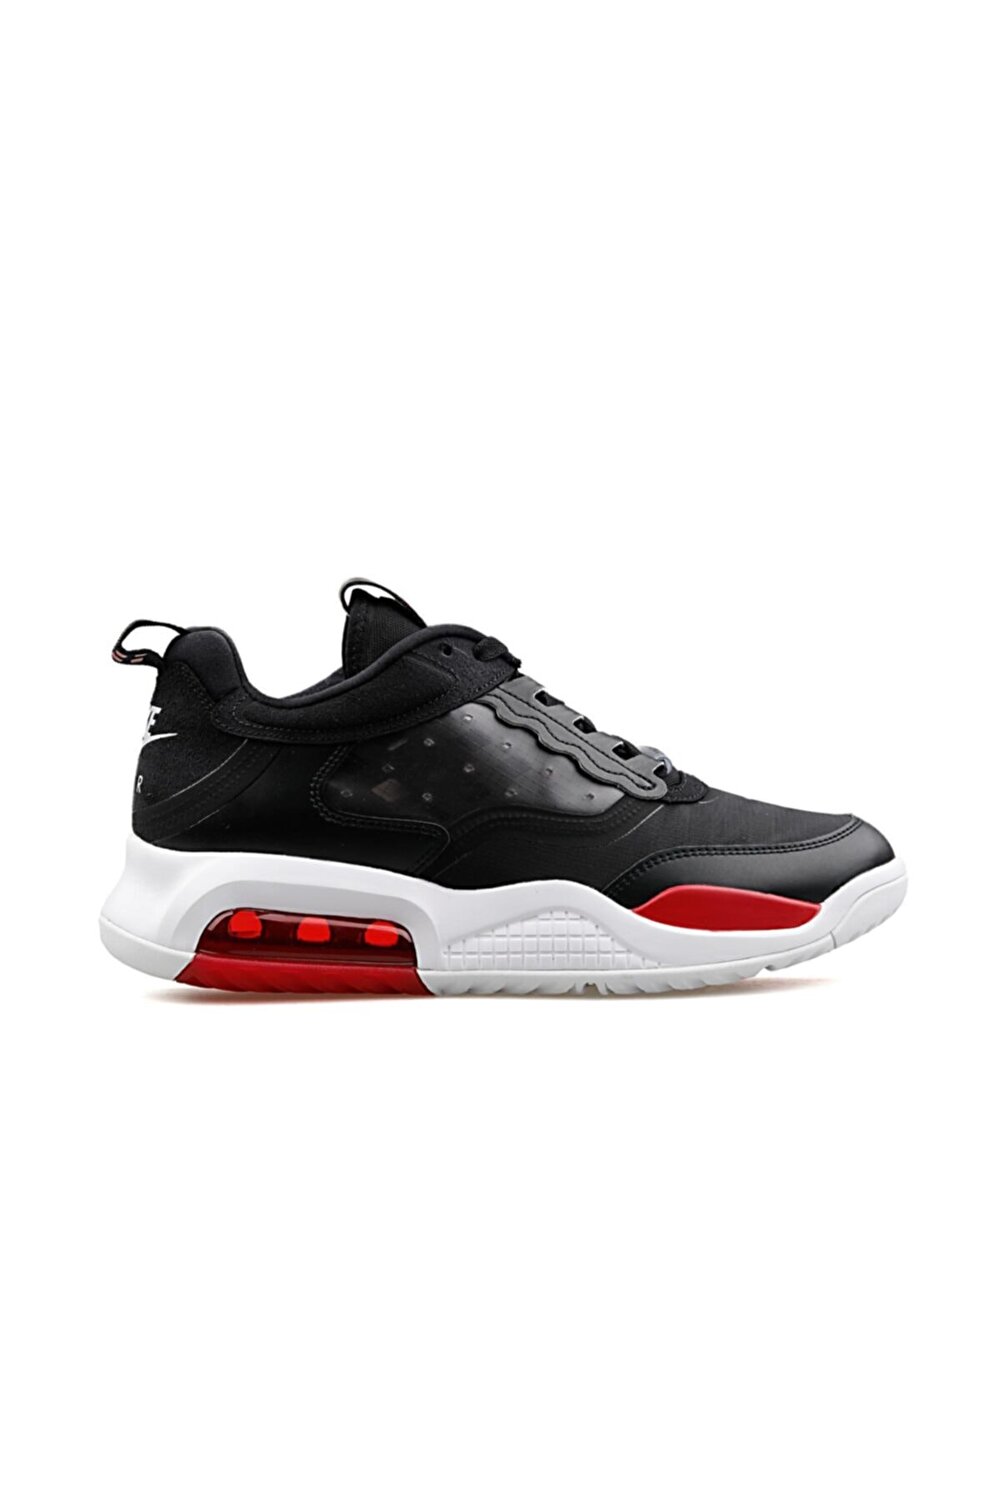 Men's Black Jordan Air Max 200 Basketball Shoes Cd6105-006